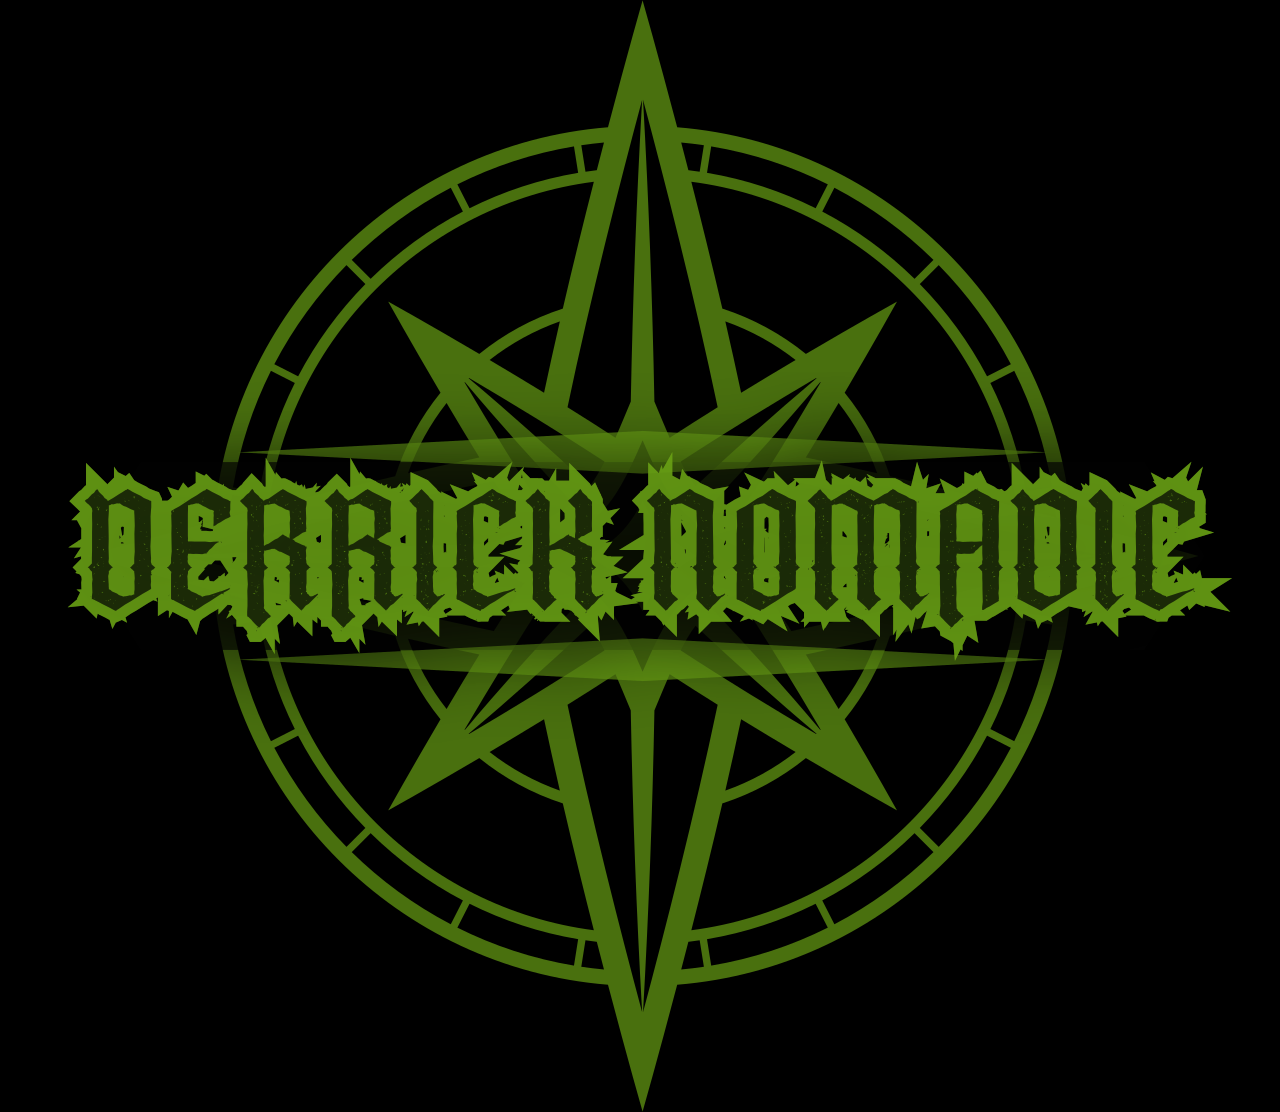 Derrick Nomadic's logo